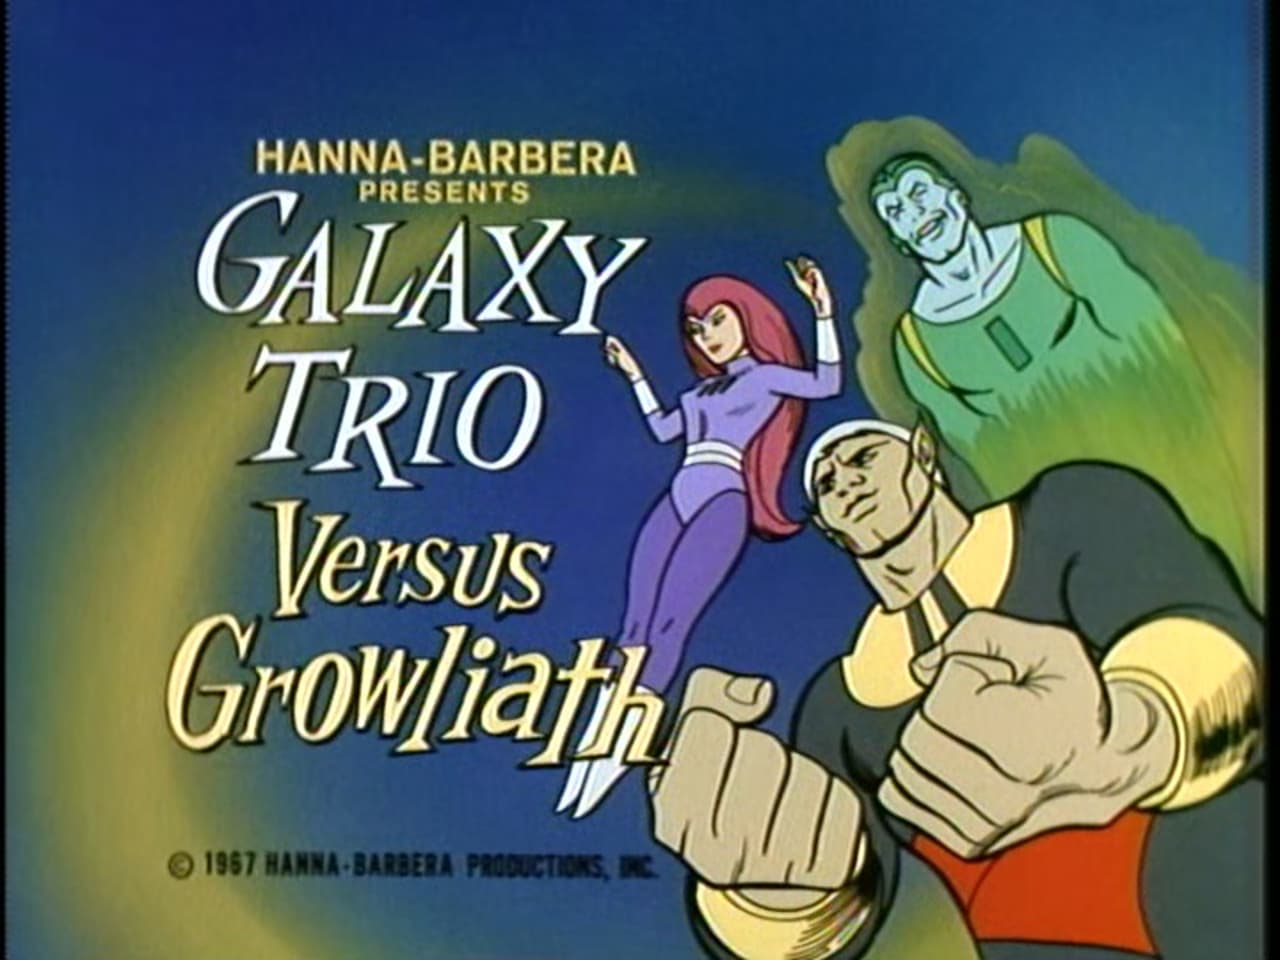 The Galaxy Trio Versus Growliath